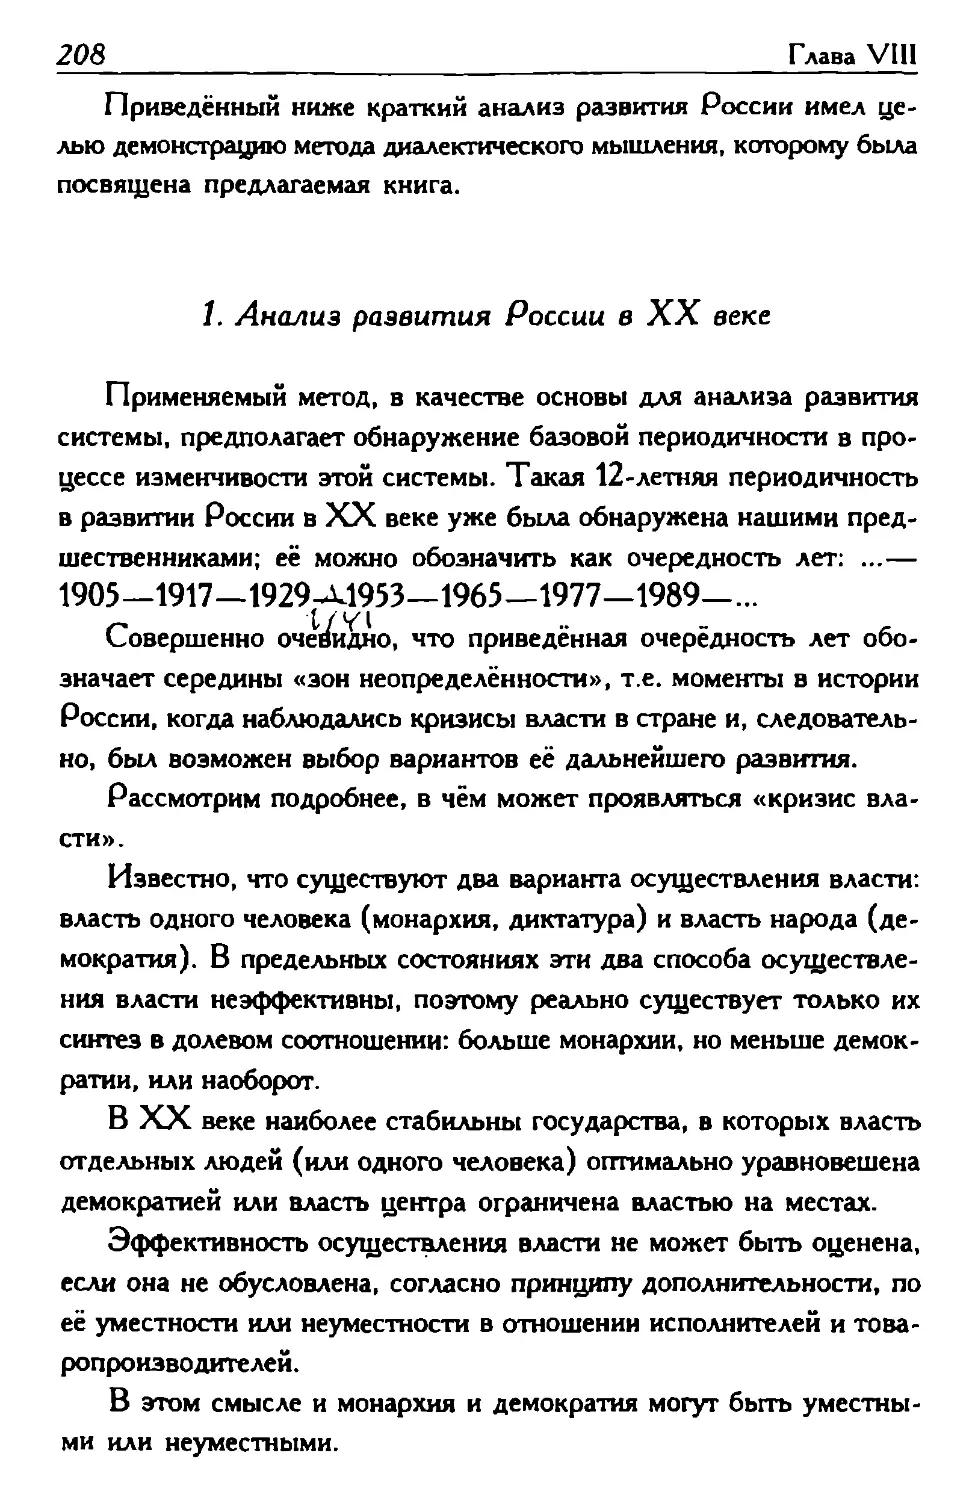 1. Анализ развития России в XX веке